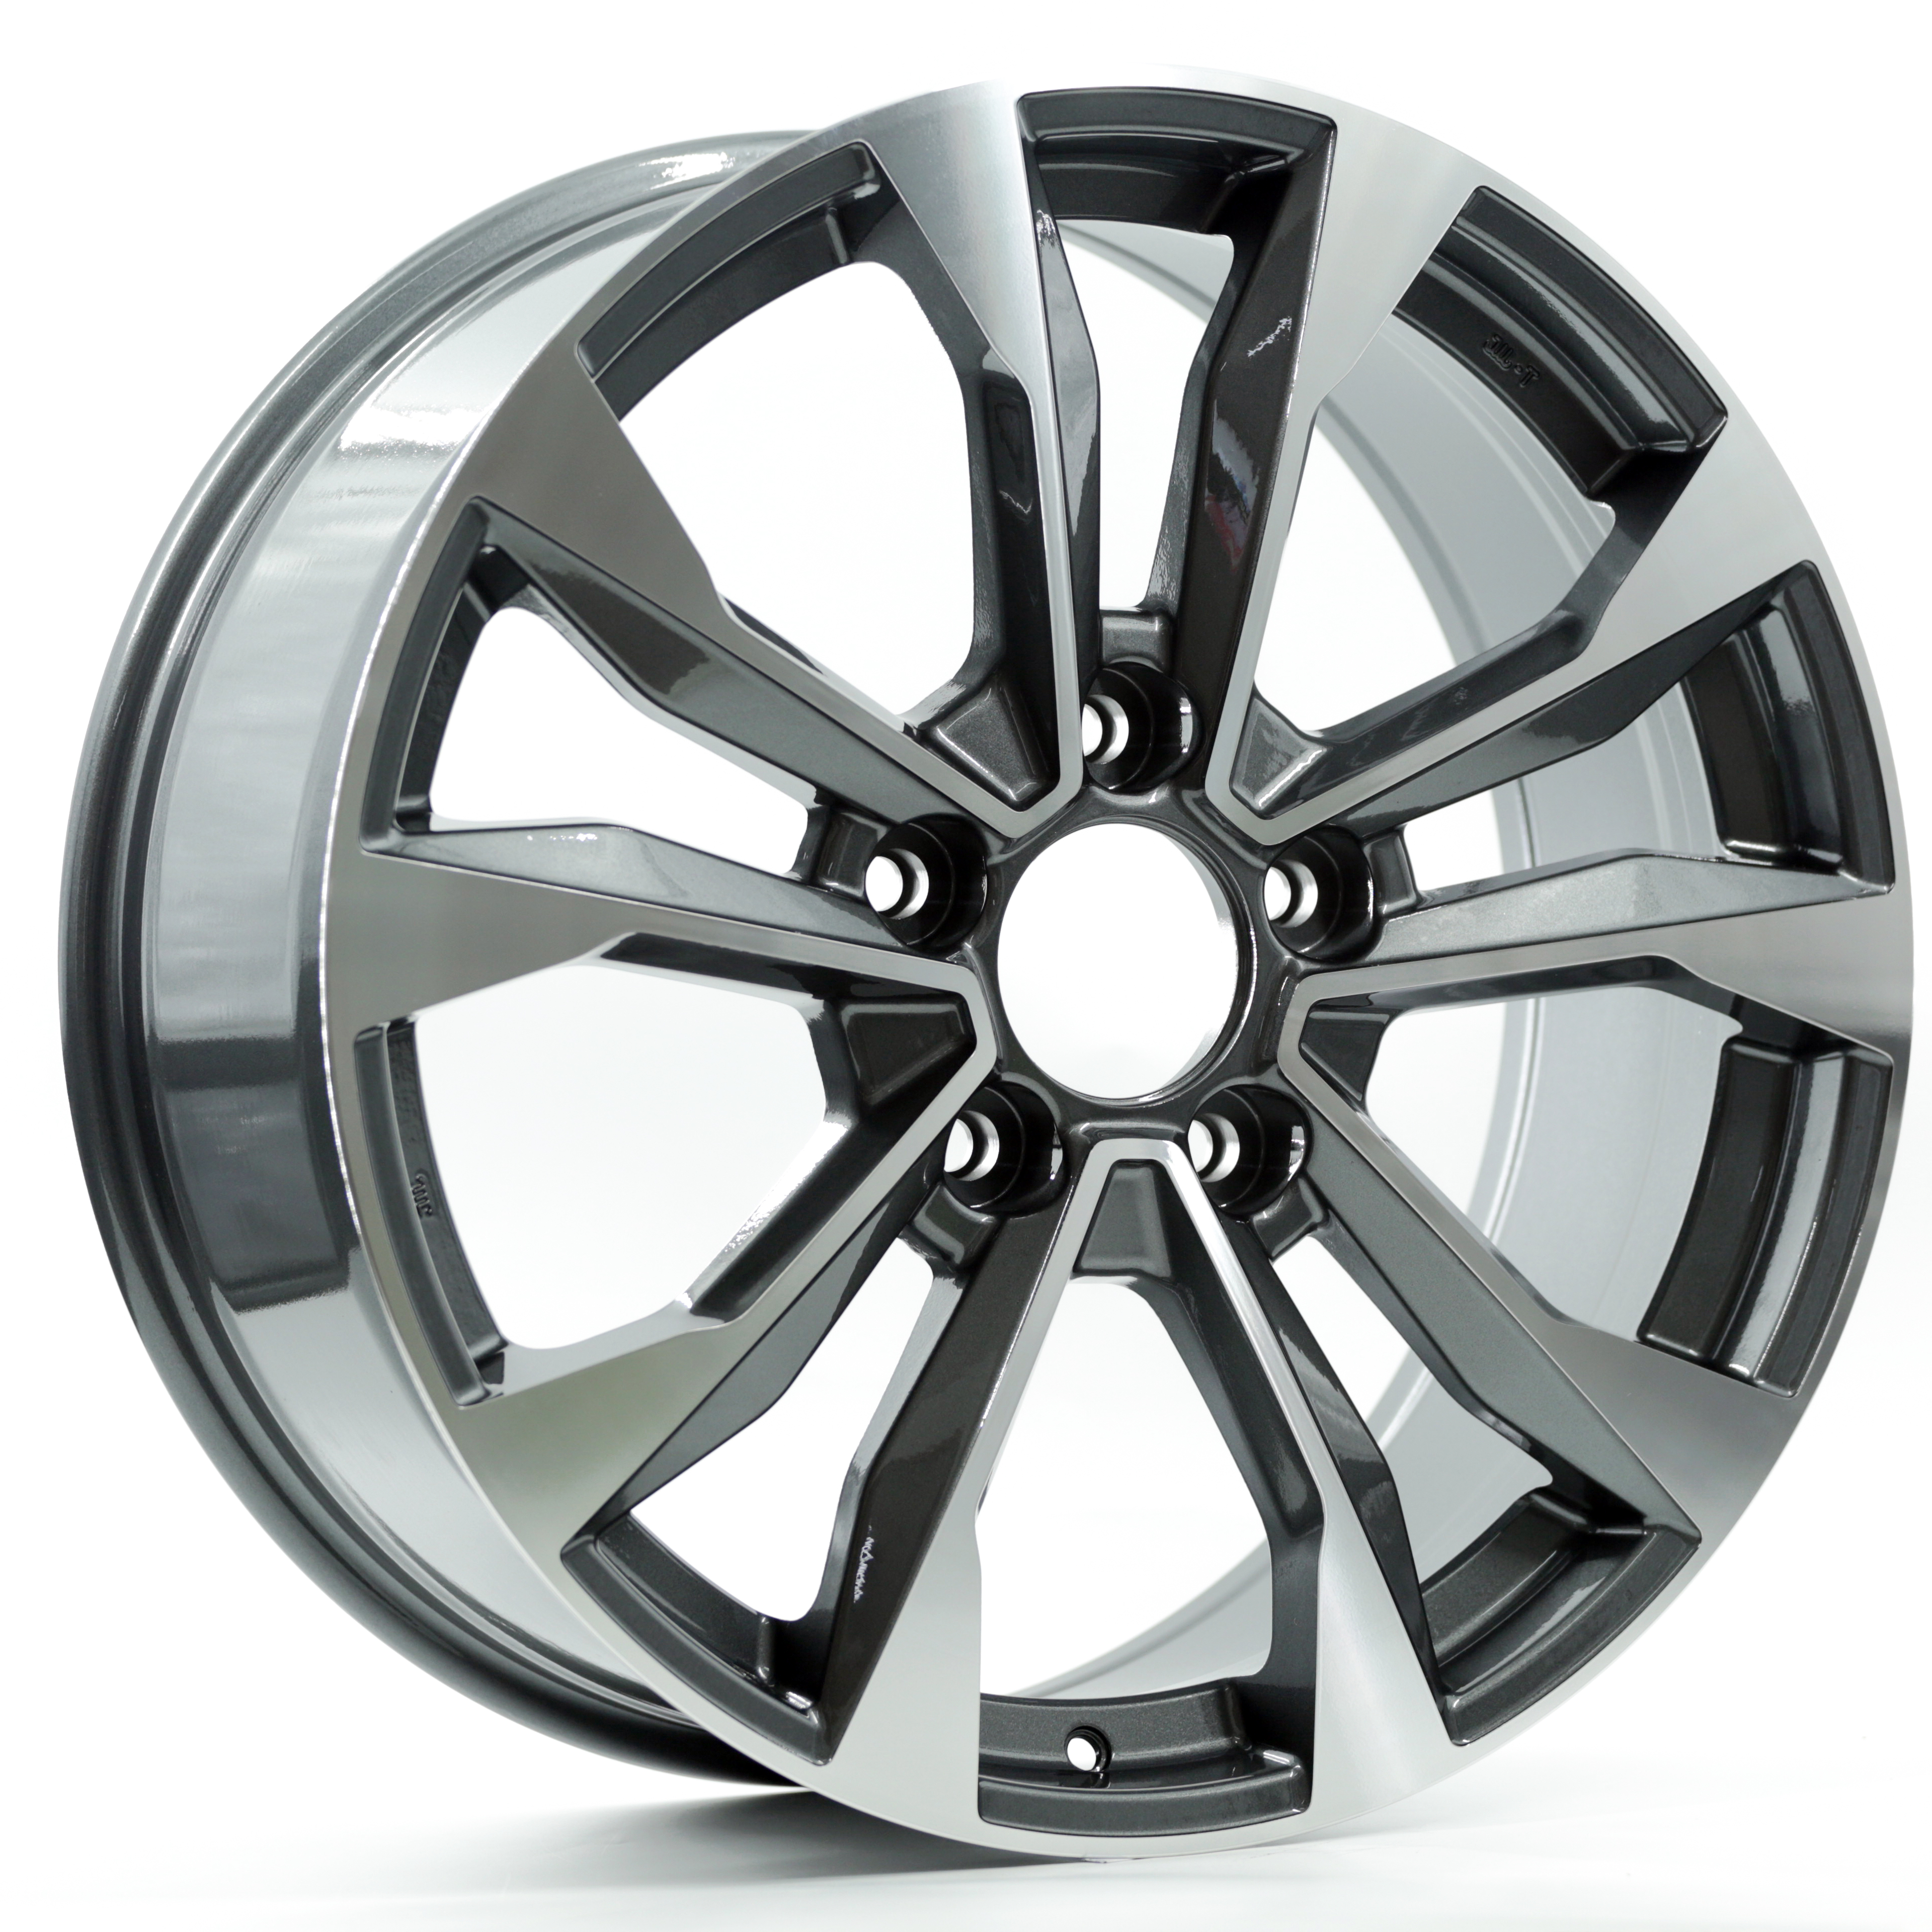 Rayone Wheels Factory 21inch 5×150 Car Alloy Wheels For Toyota/Lexus